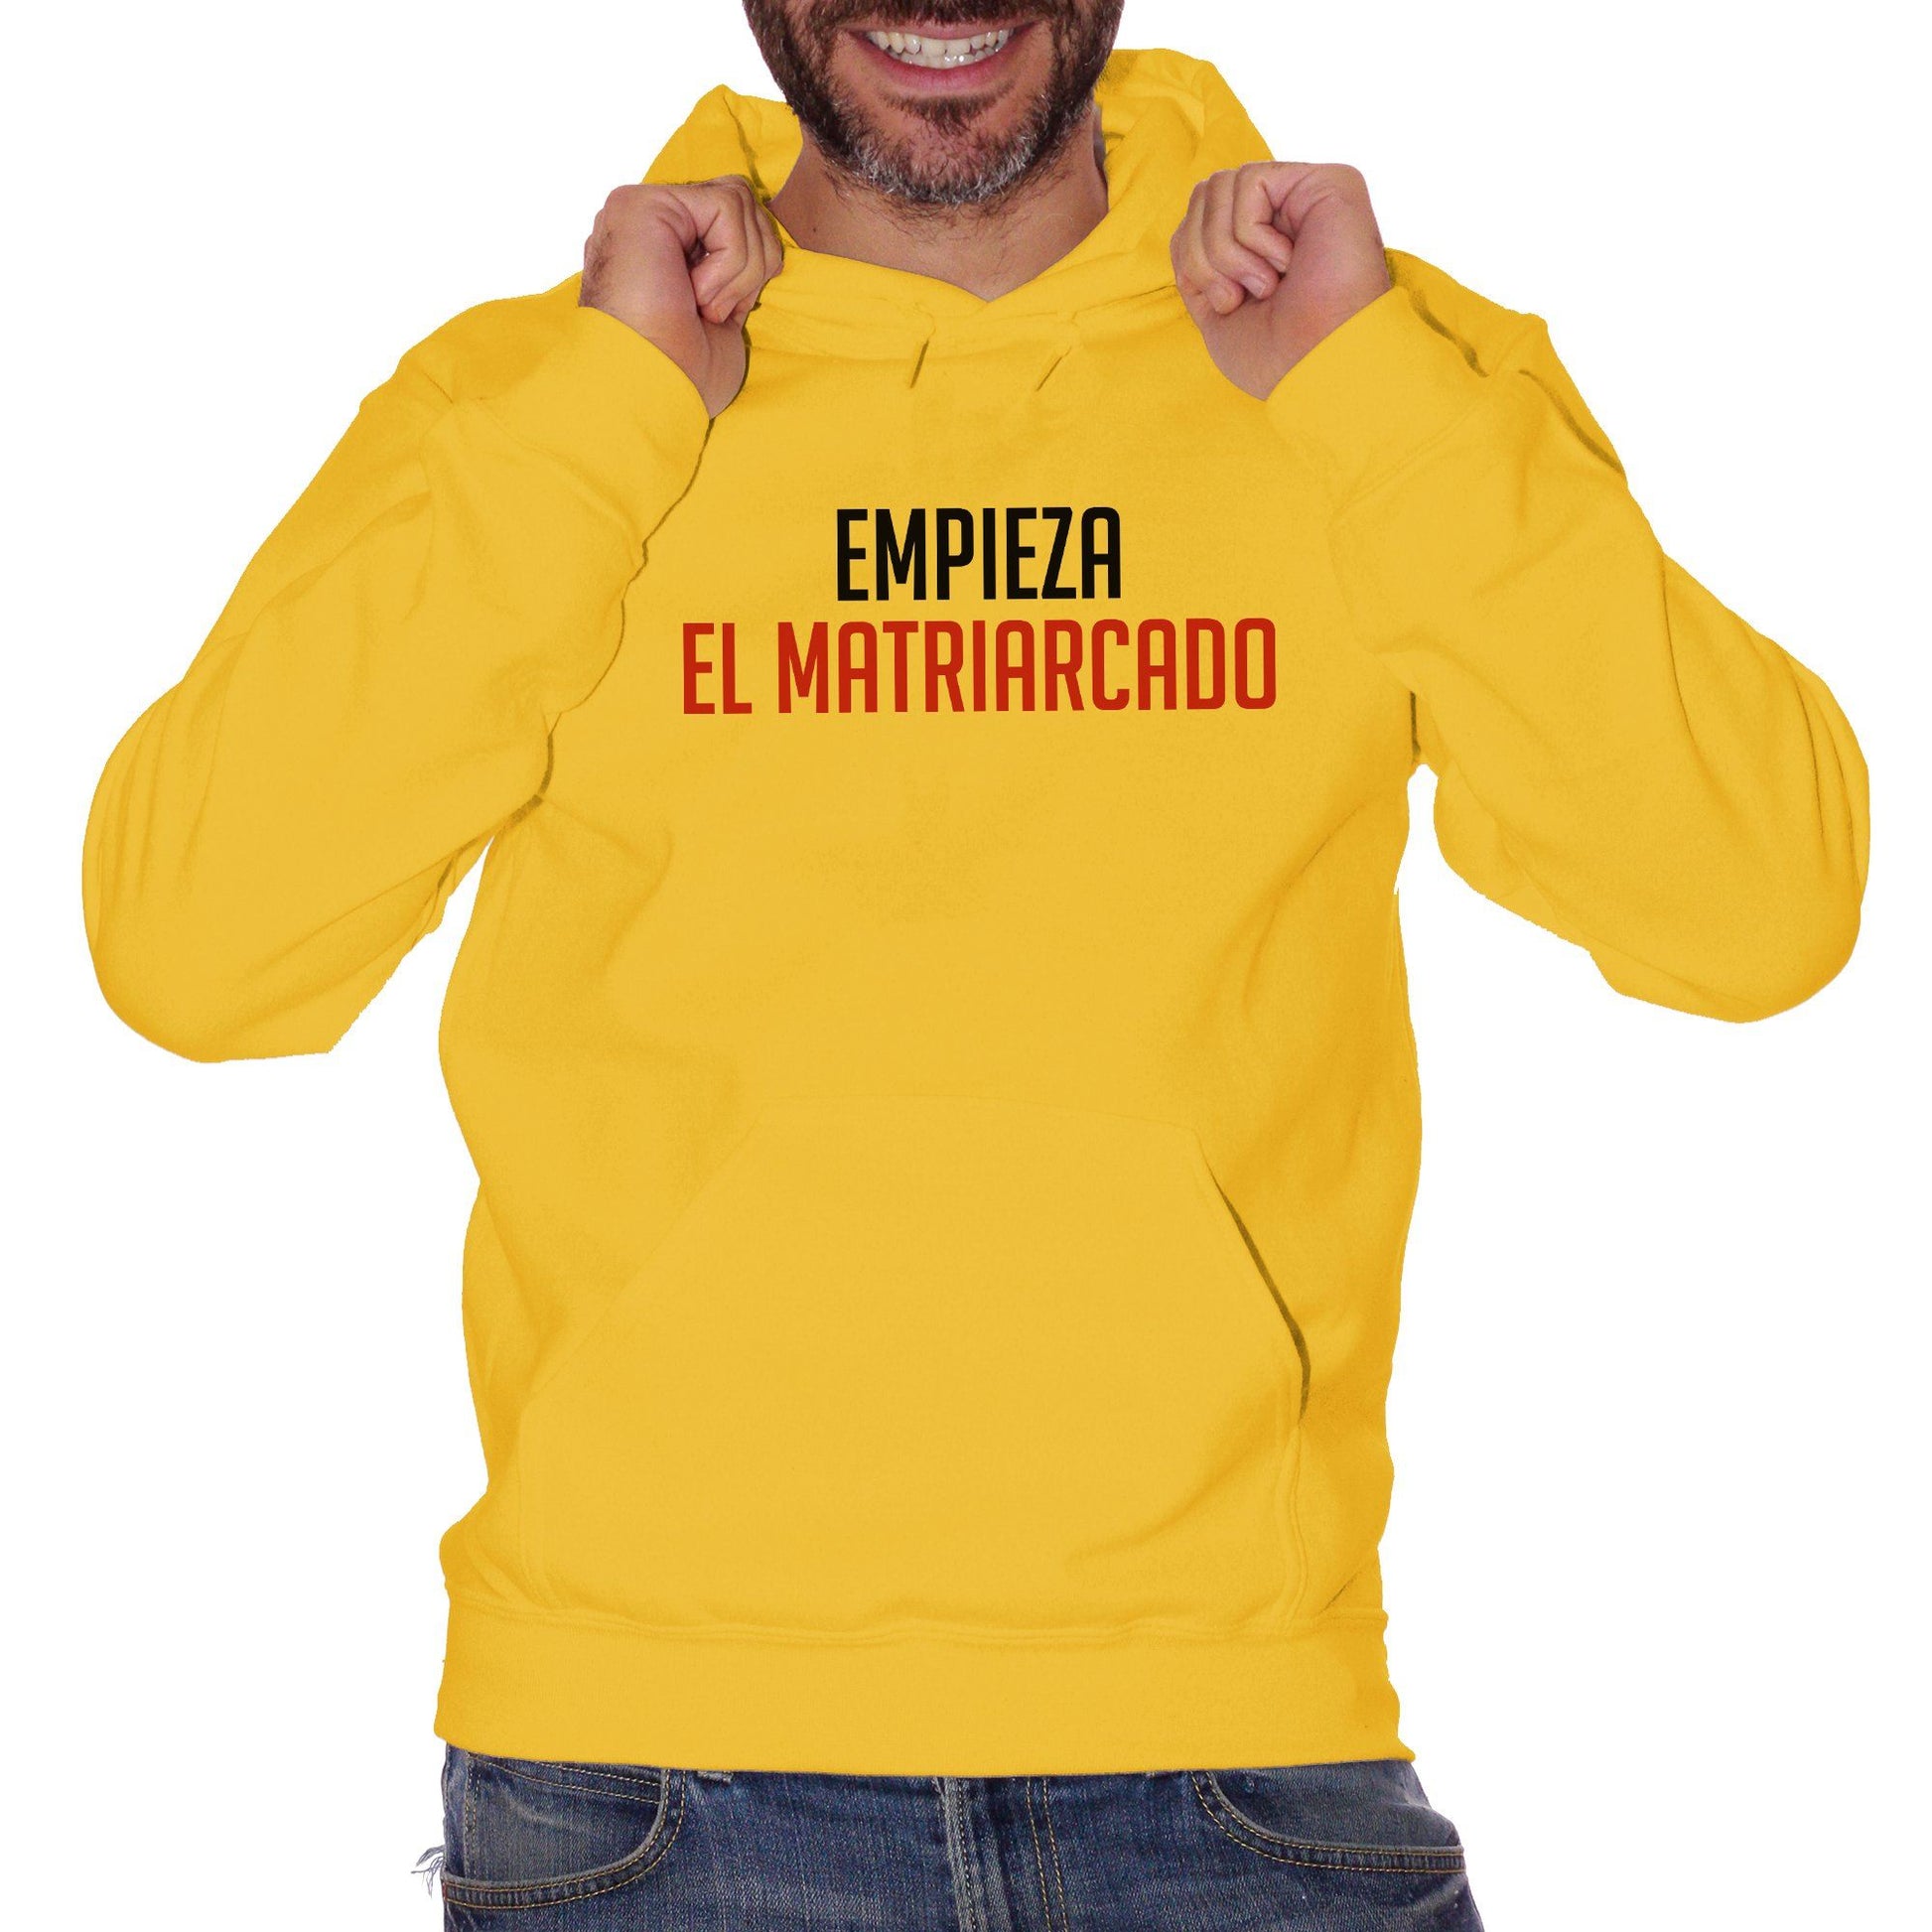 Goldenrod Felpa Cappuccio Empieza El Matriarcado - Serie TV Netflix Vis a Vis - Movie Choose ur color CucShop